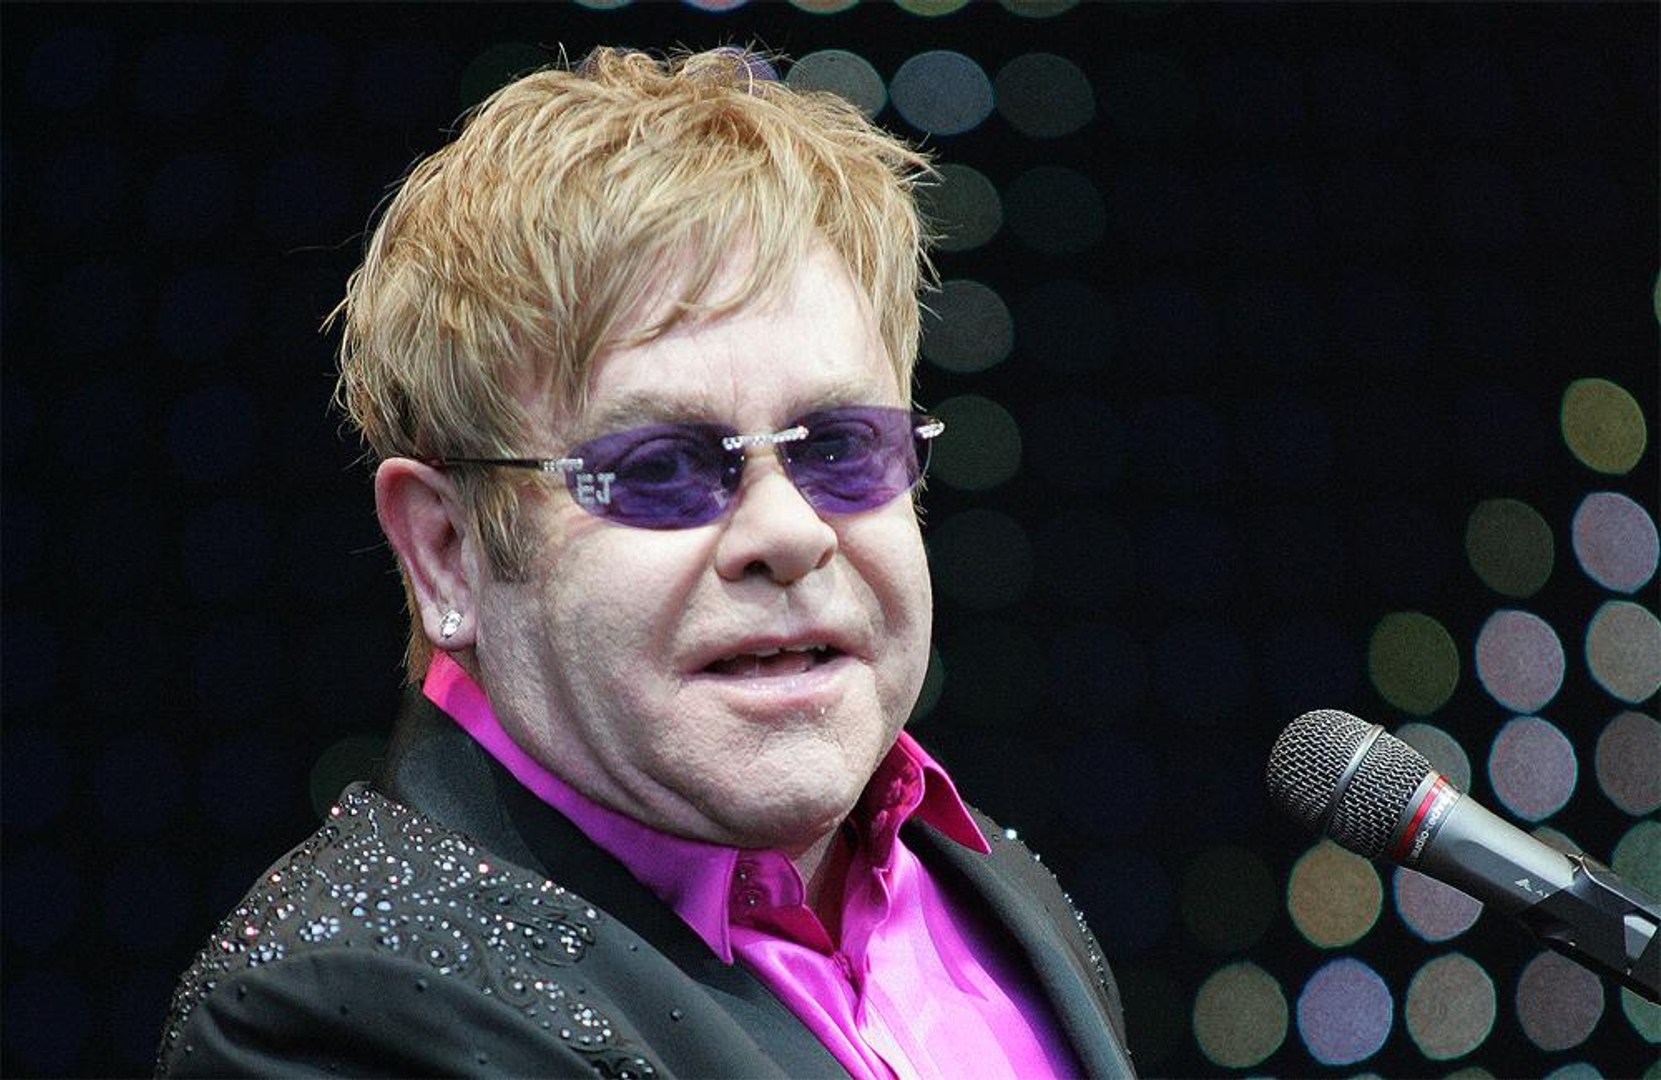 Elton John praises sexy Miley Cyrus